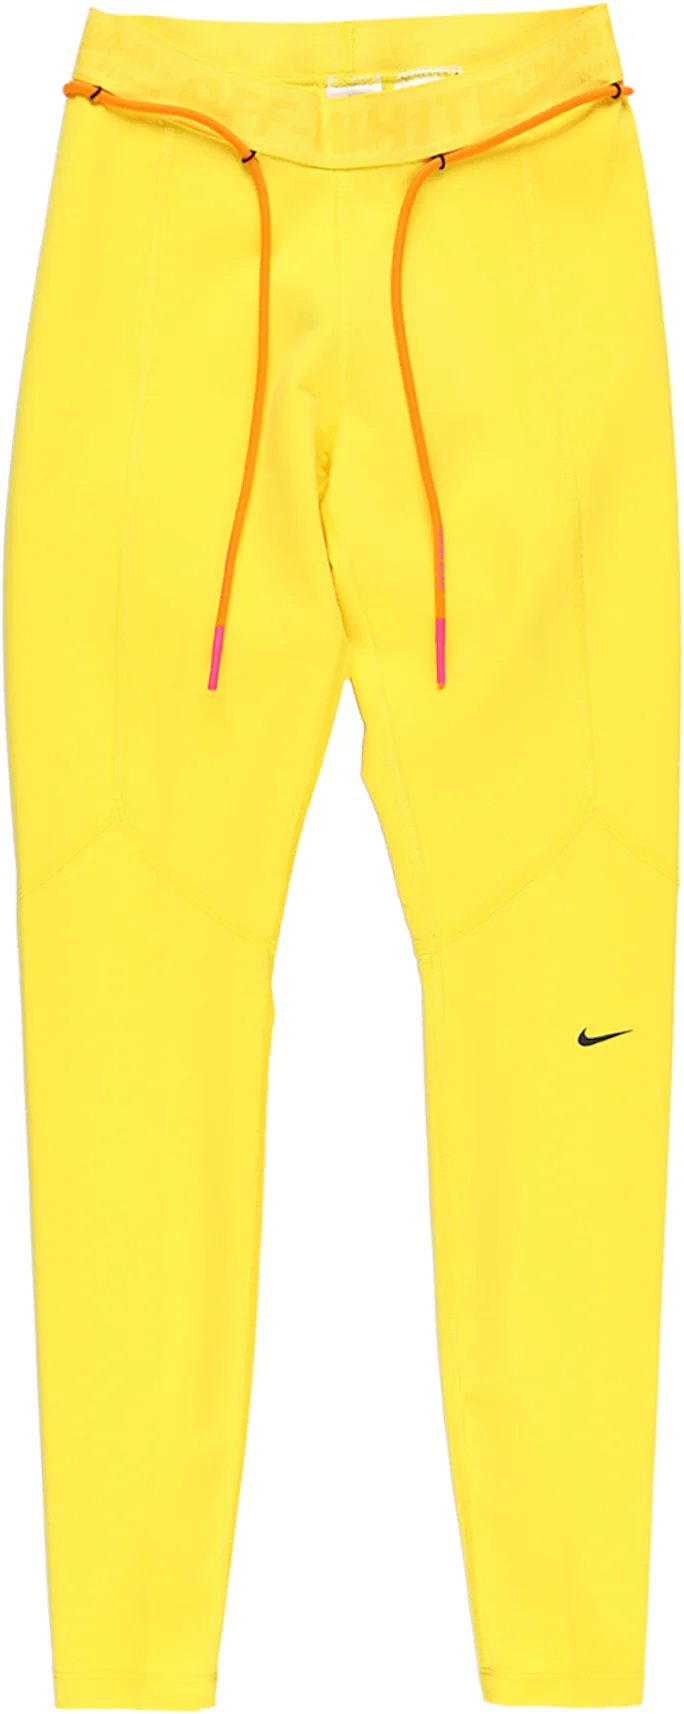 OFF-WHITE x Nike Women's Running Tight Yellow - FW19 - US